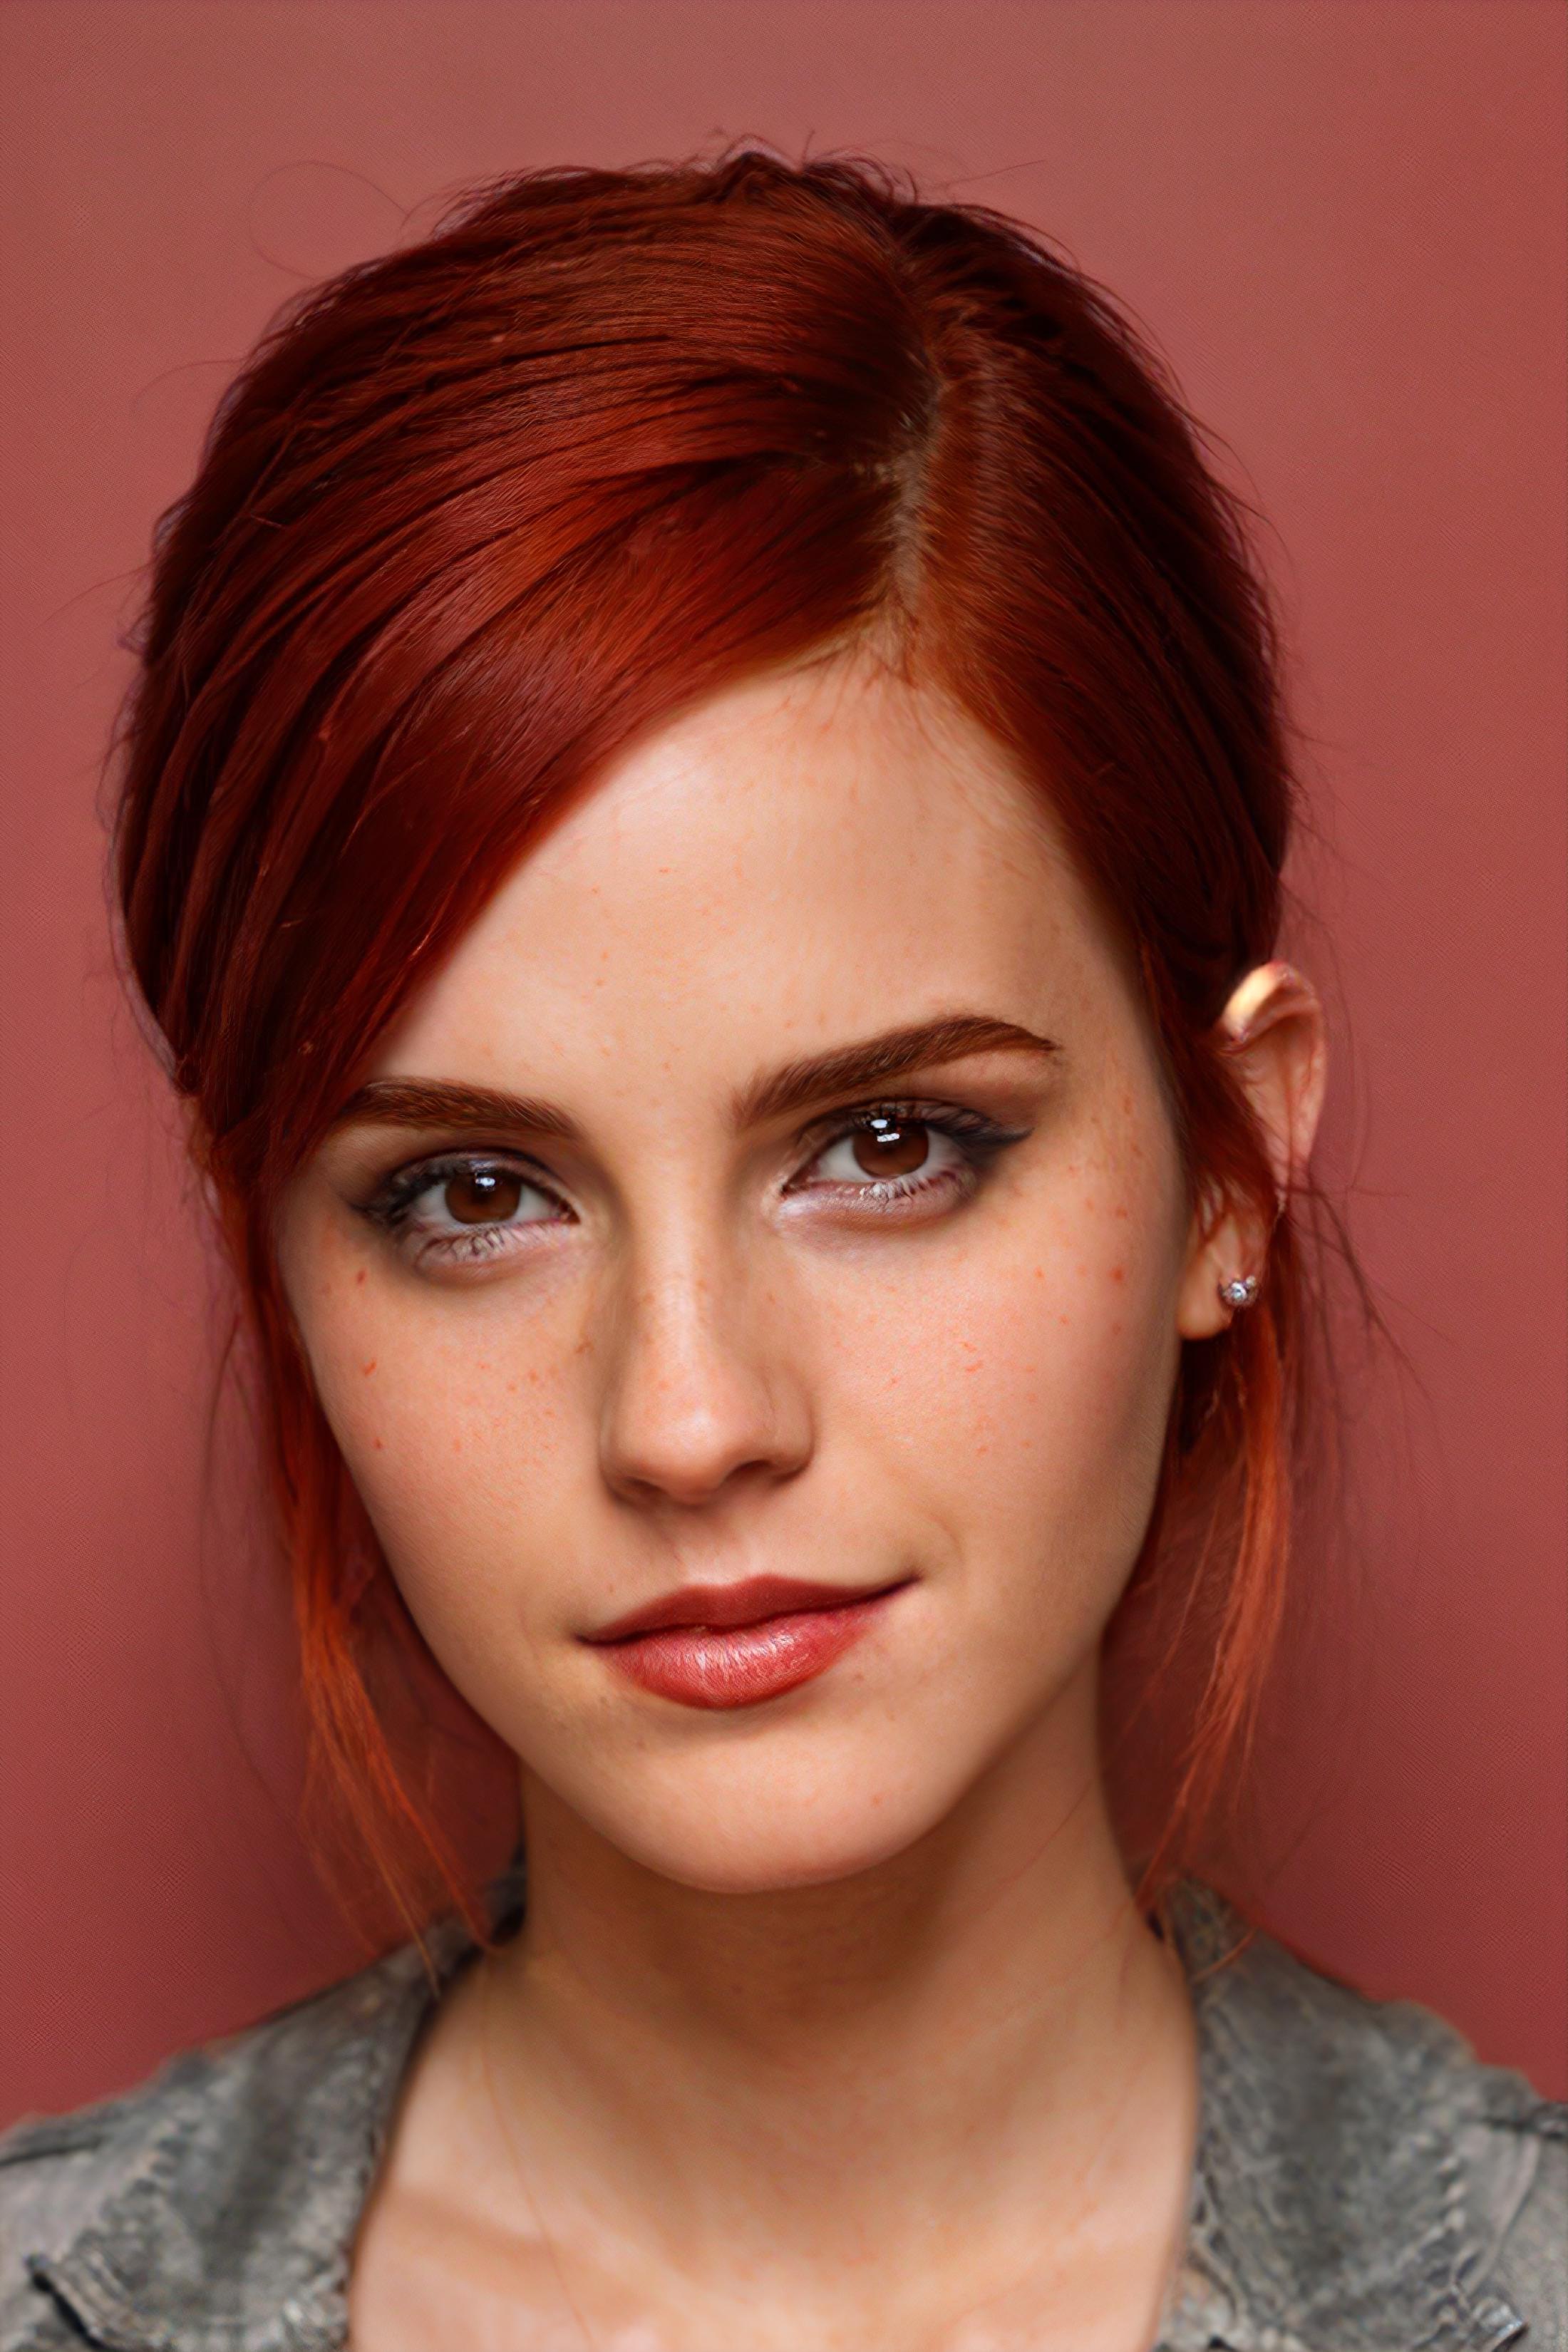 Emma Watson / Hermione Granger image by __2_